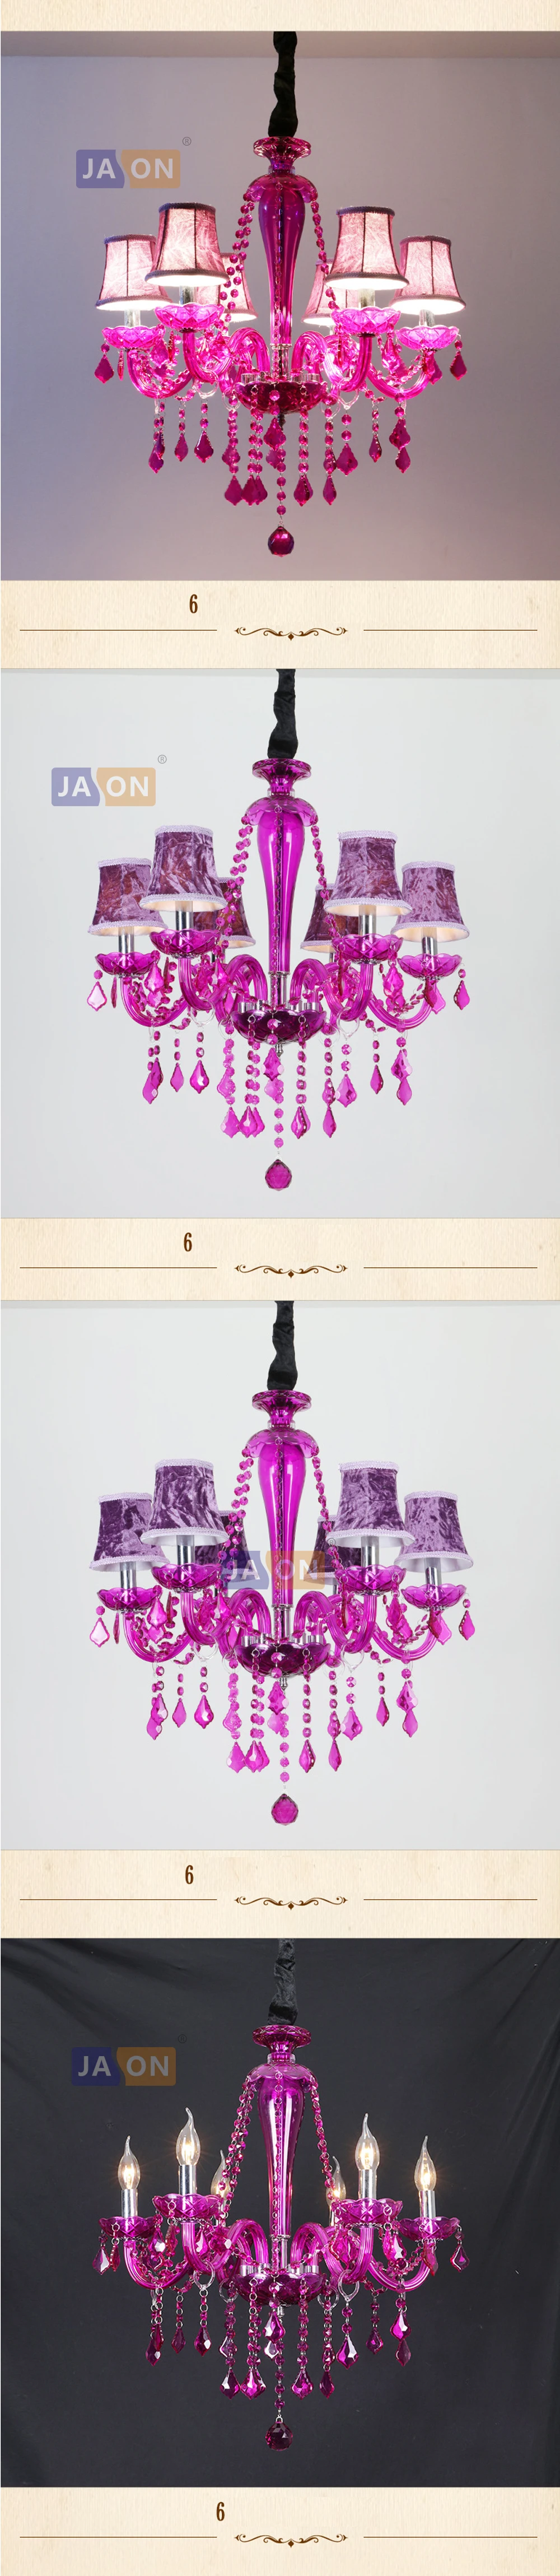 Led e14 Европейский металлический хрустальный стеклянный материал пурпурная люстра освещение Lamparas De Techo подвесной светильник Lampen для фойе